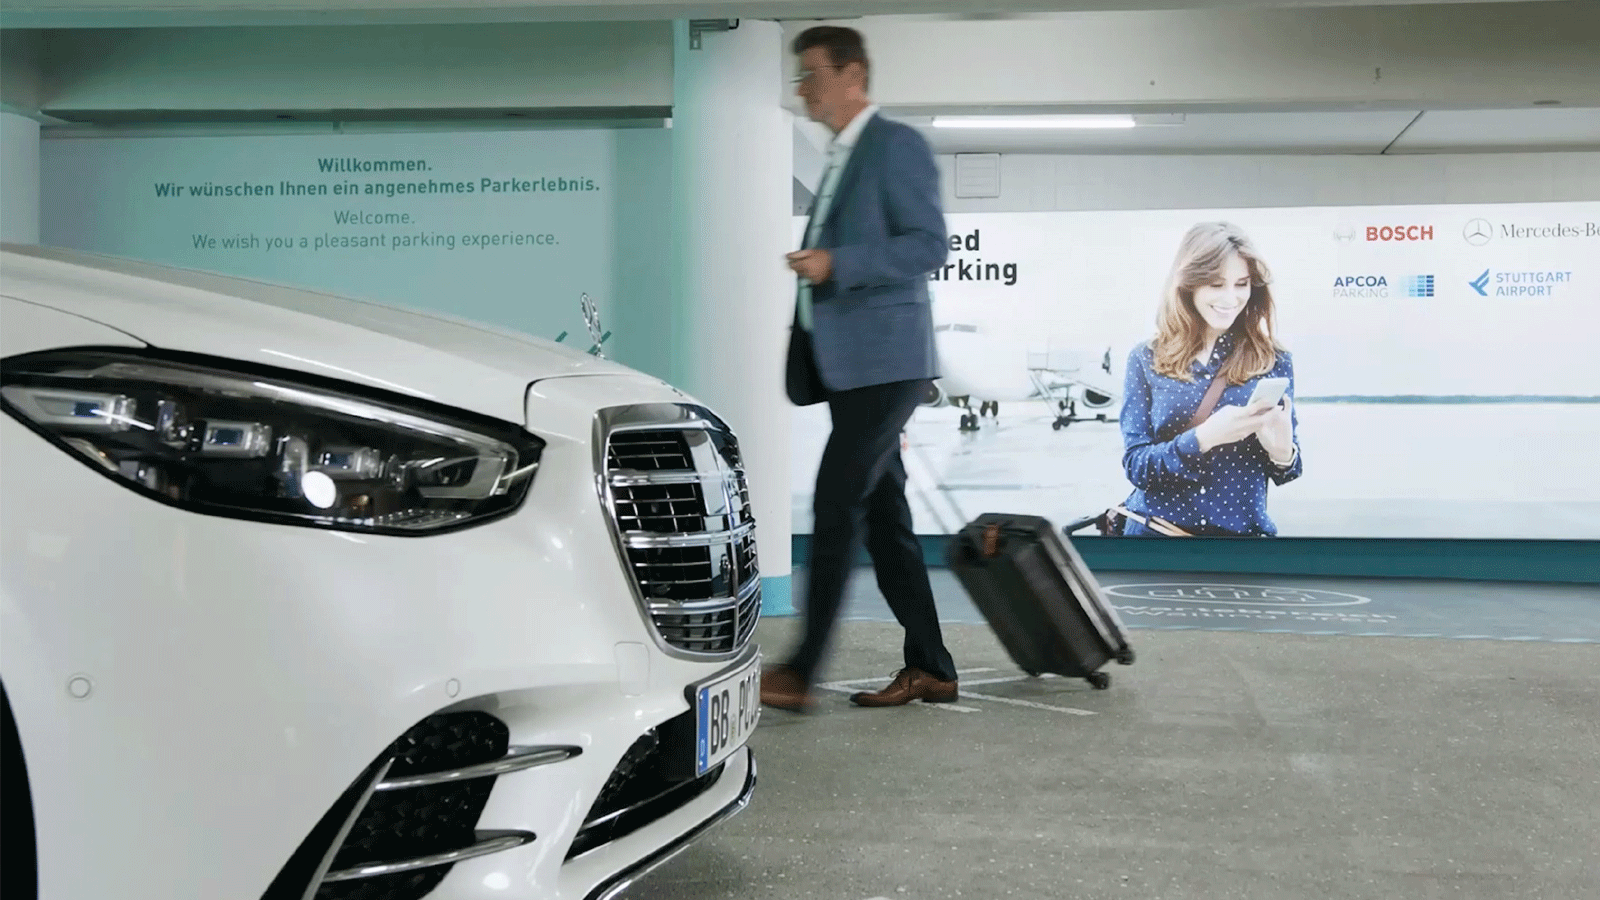 أول سلسلة تستخدم توقيف السيارات عن بعد باستخدام الهاتف الذكي في العالم في مرآب السيارات بمطار شتوتغارت. في ال STR_Airport(صورة من صفحة مطار شتوتغارت الرسمية على تويتر) 